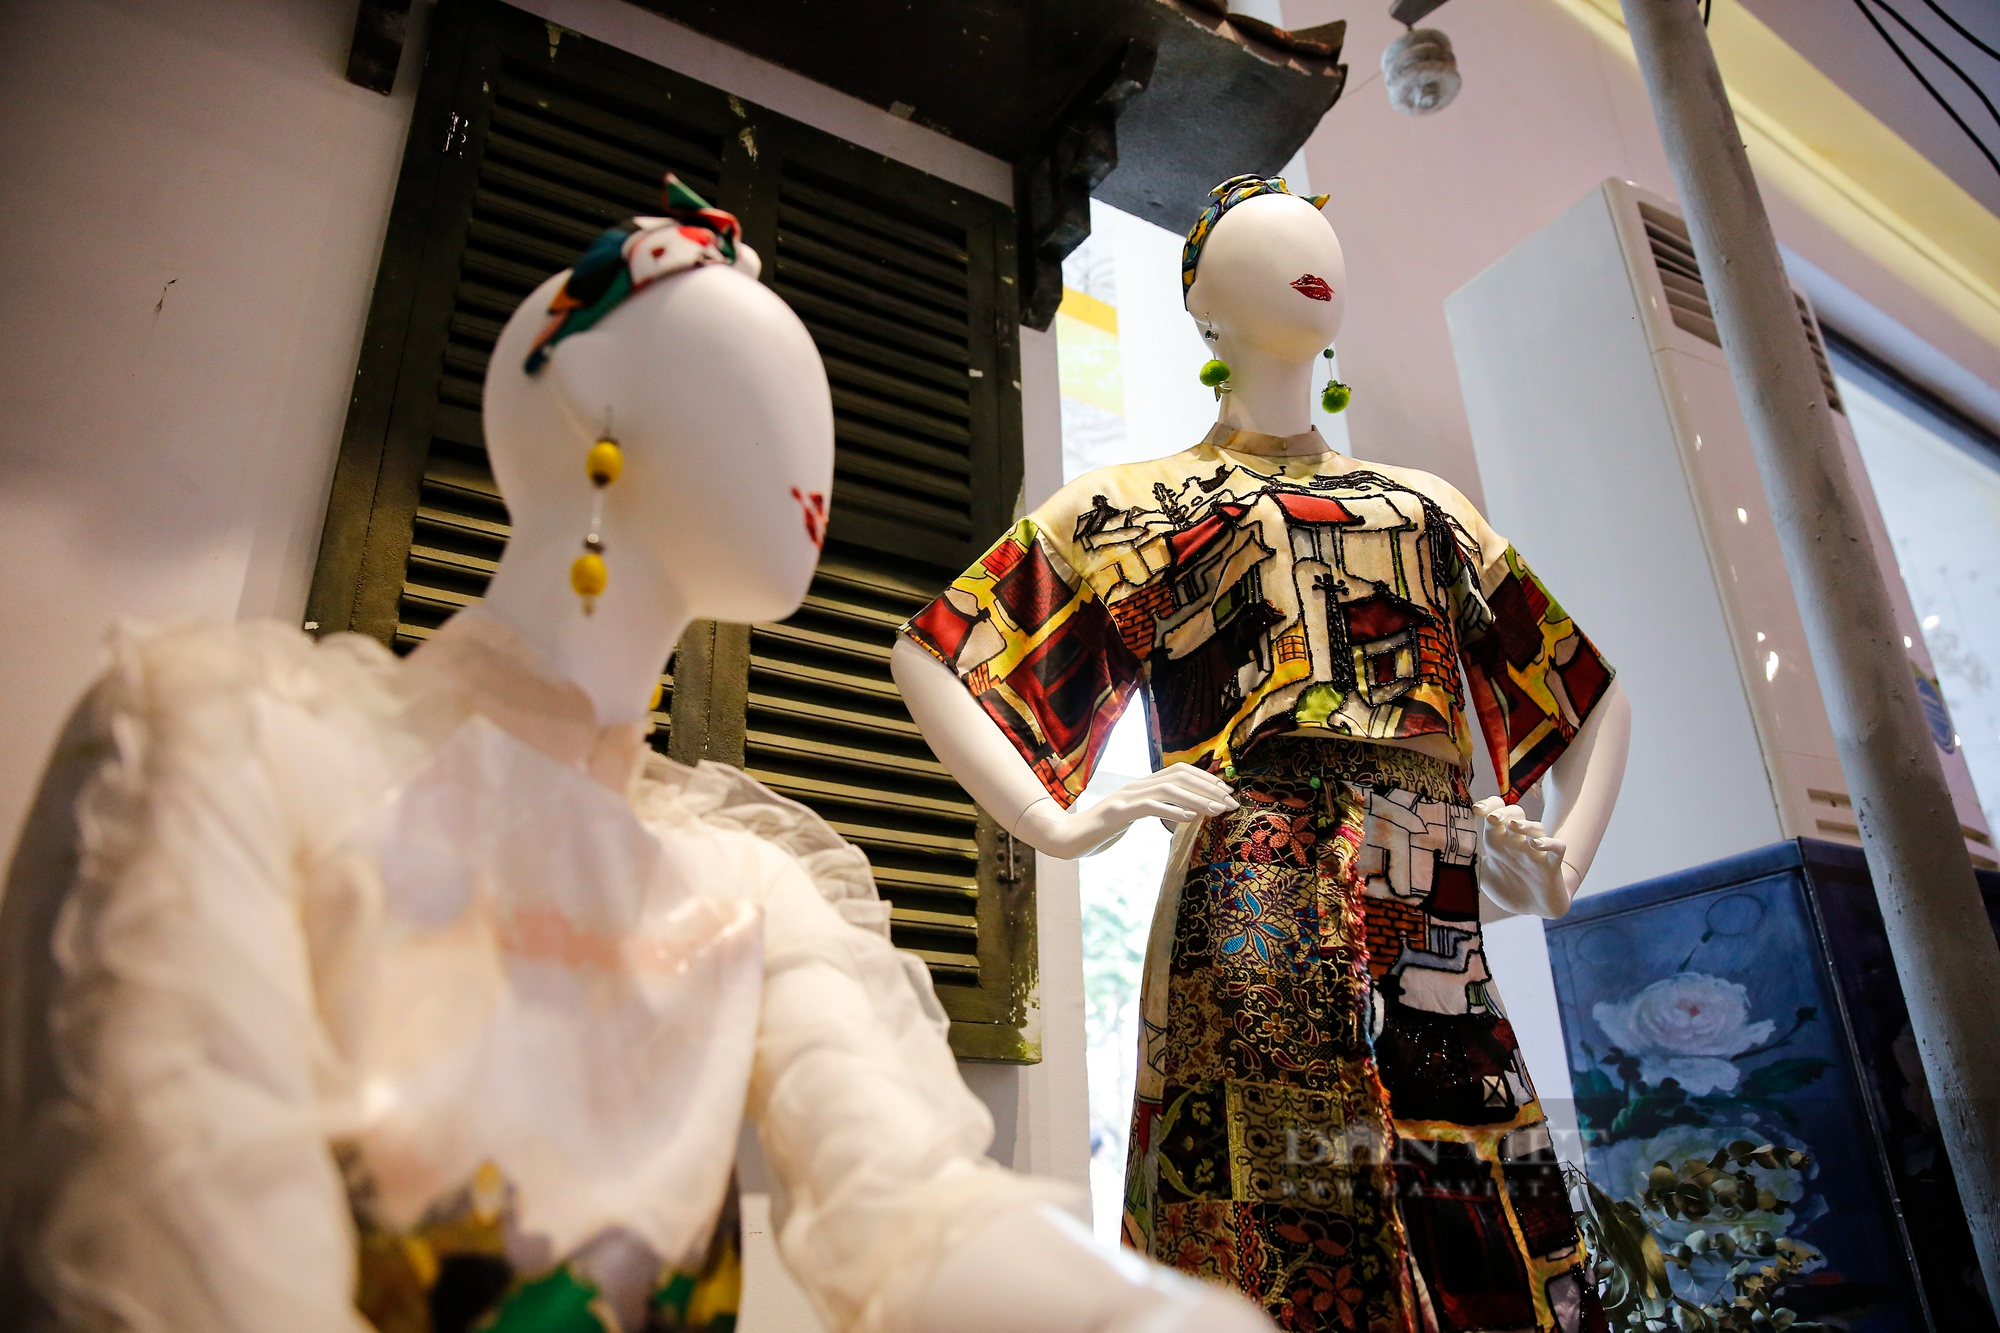 Bộ sưu tập áo dài đặc biệt của người phụ nữ có ảnh hưởng nhất Việt Nam do tạp chí Forbes bình chọn - Ảnh 11.